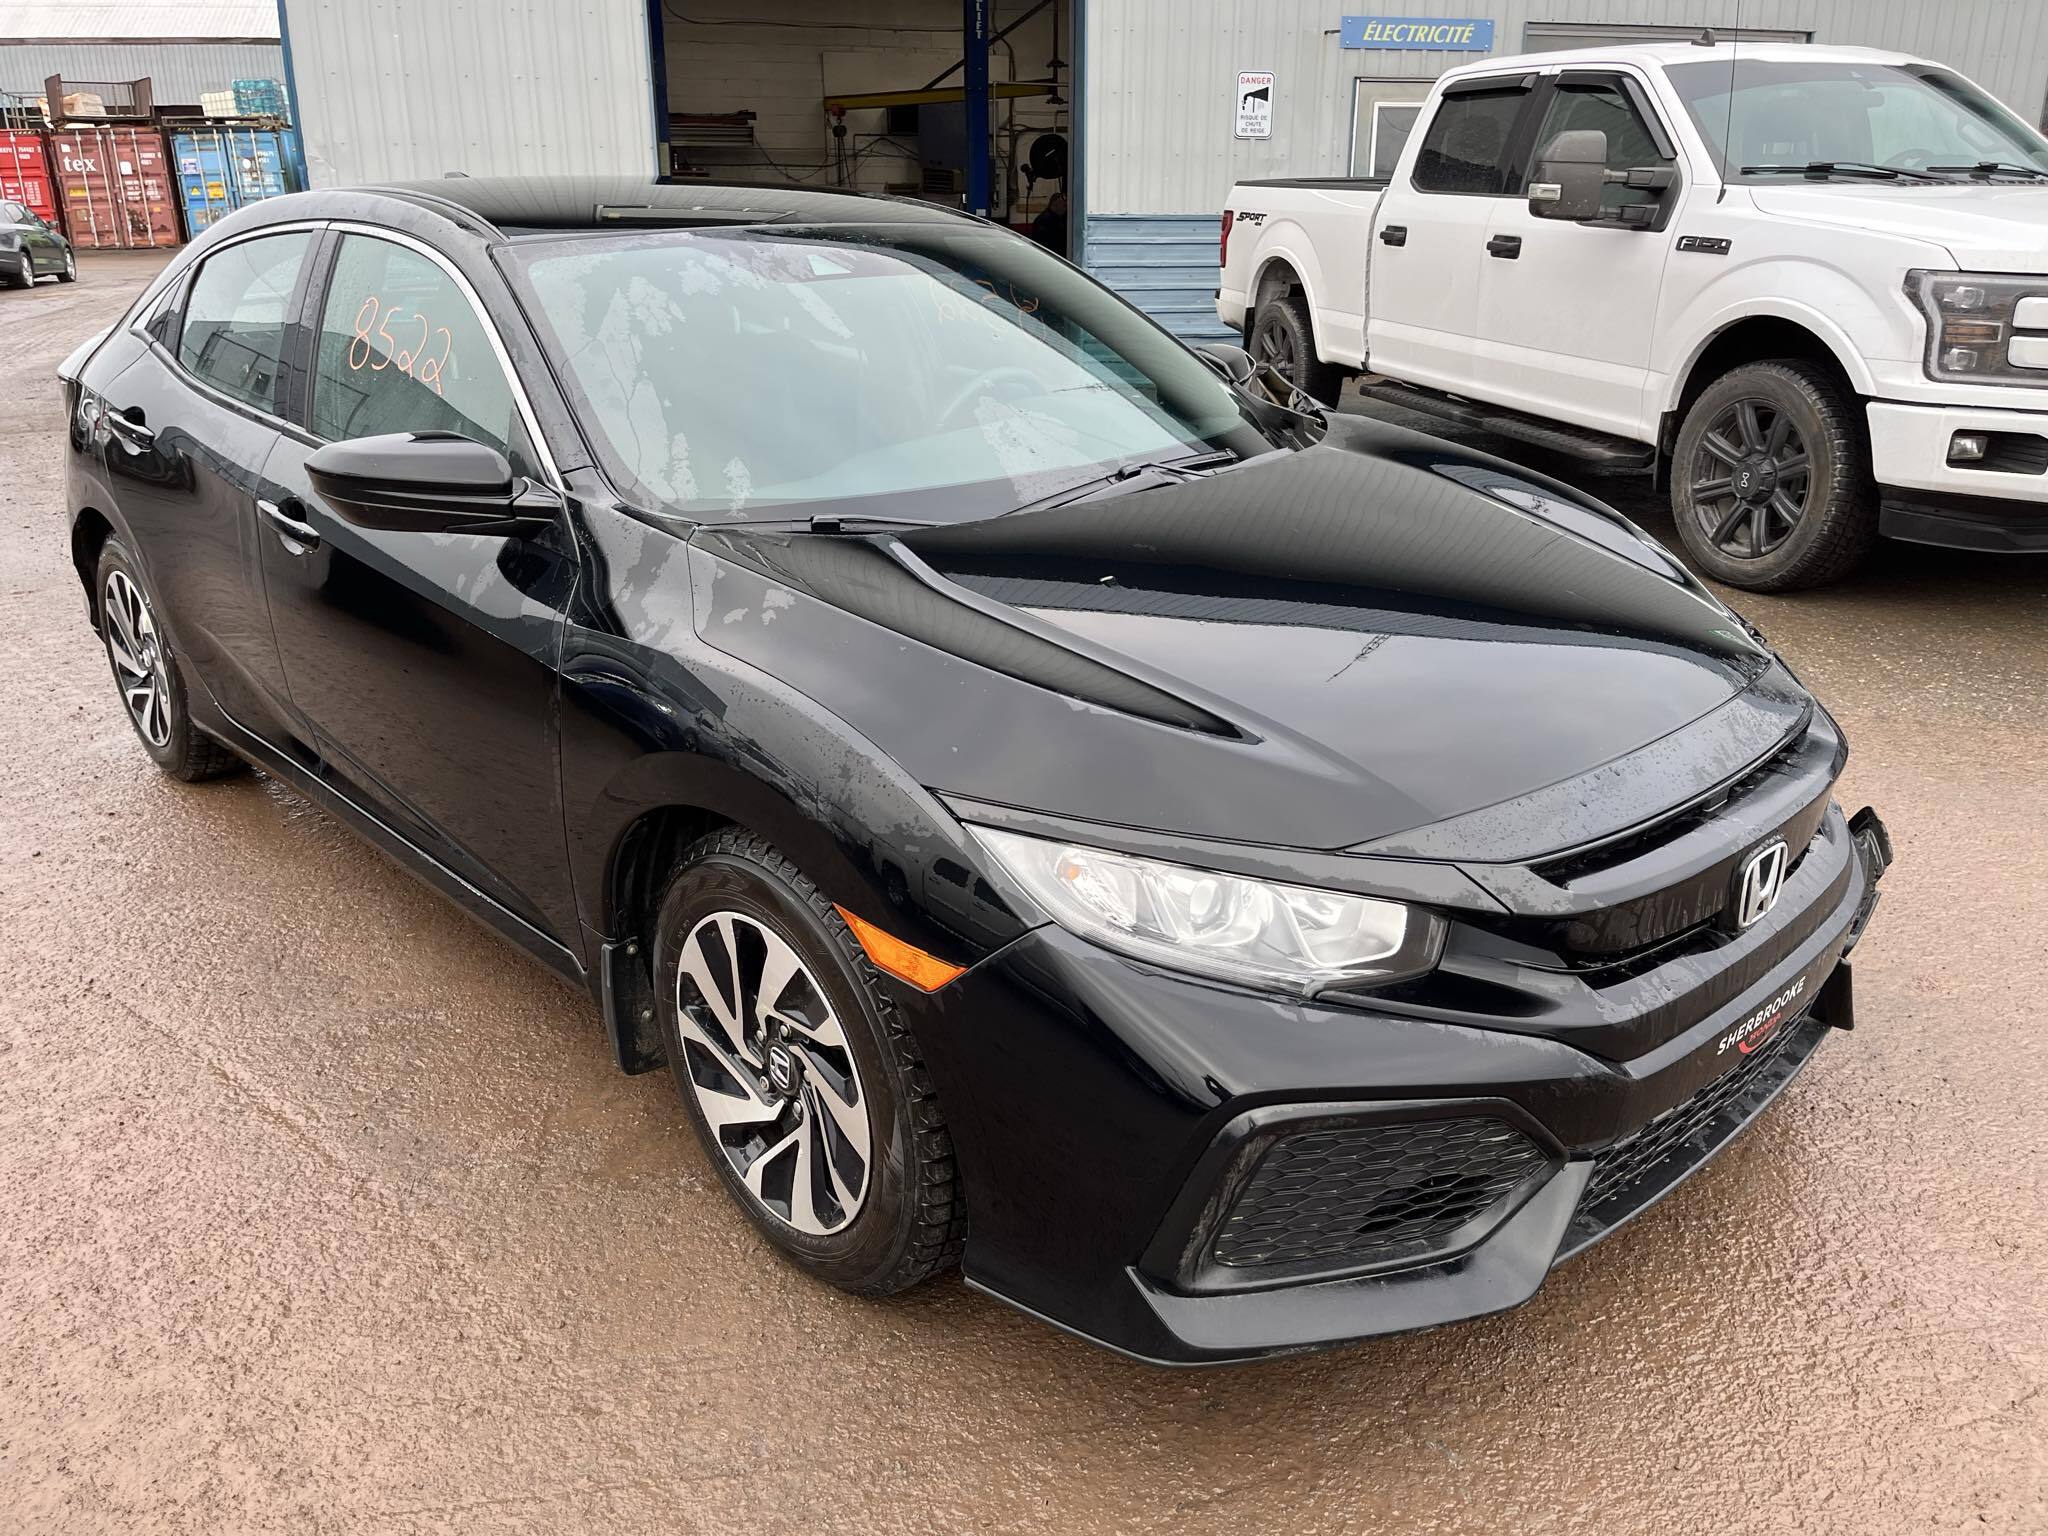 2019 Honda Civic Hatchback LX CVT